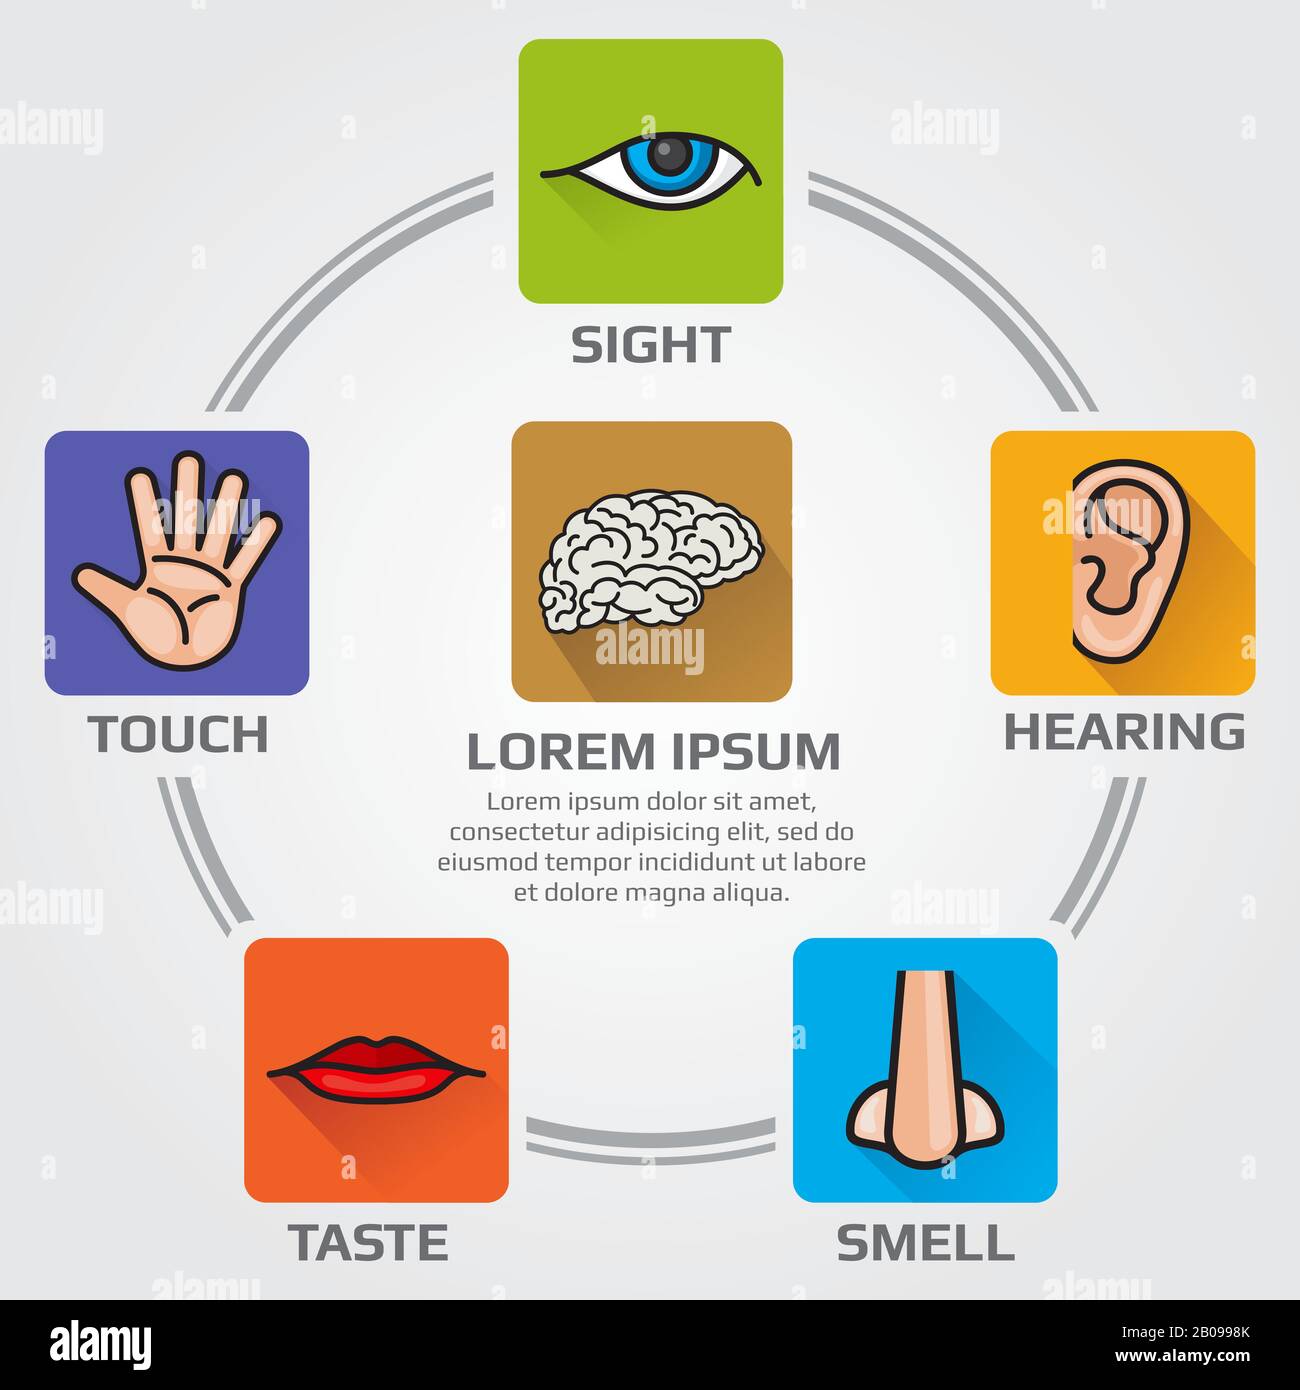 Cinq sens humains sentent, la vue, l'audition, le goût, sensoriel. Infographie vectorielle avec icônes nez, main, bouche, œil, oreille. Illustration du cerveau et des sens himan Illustration de Vecteur